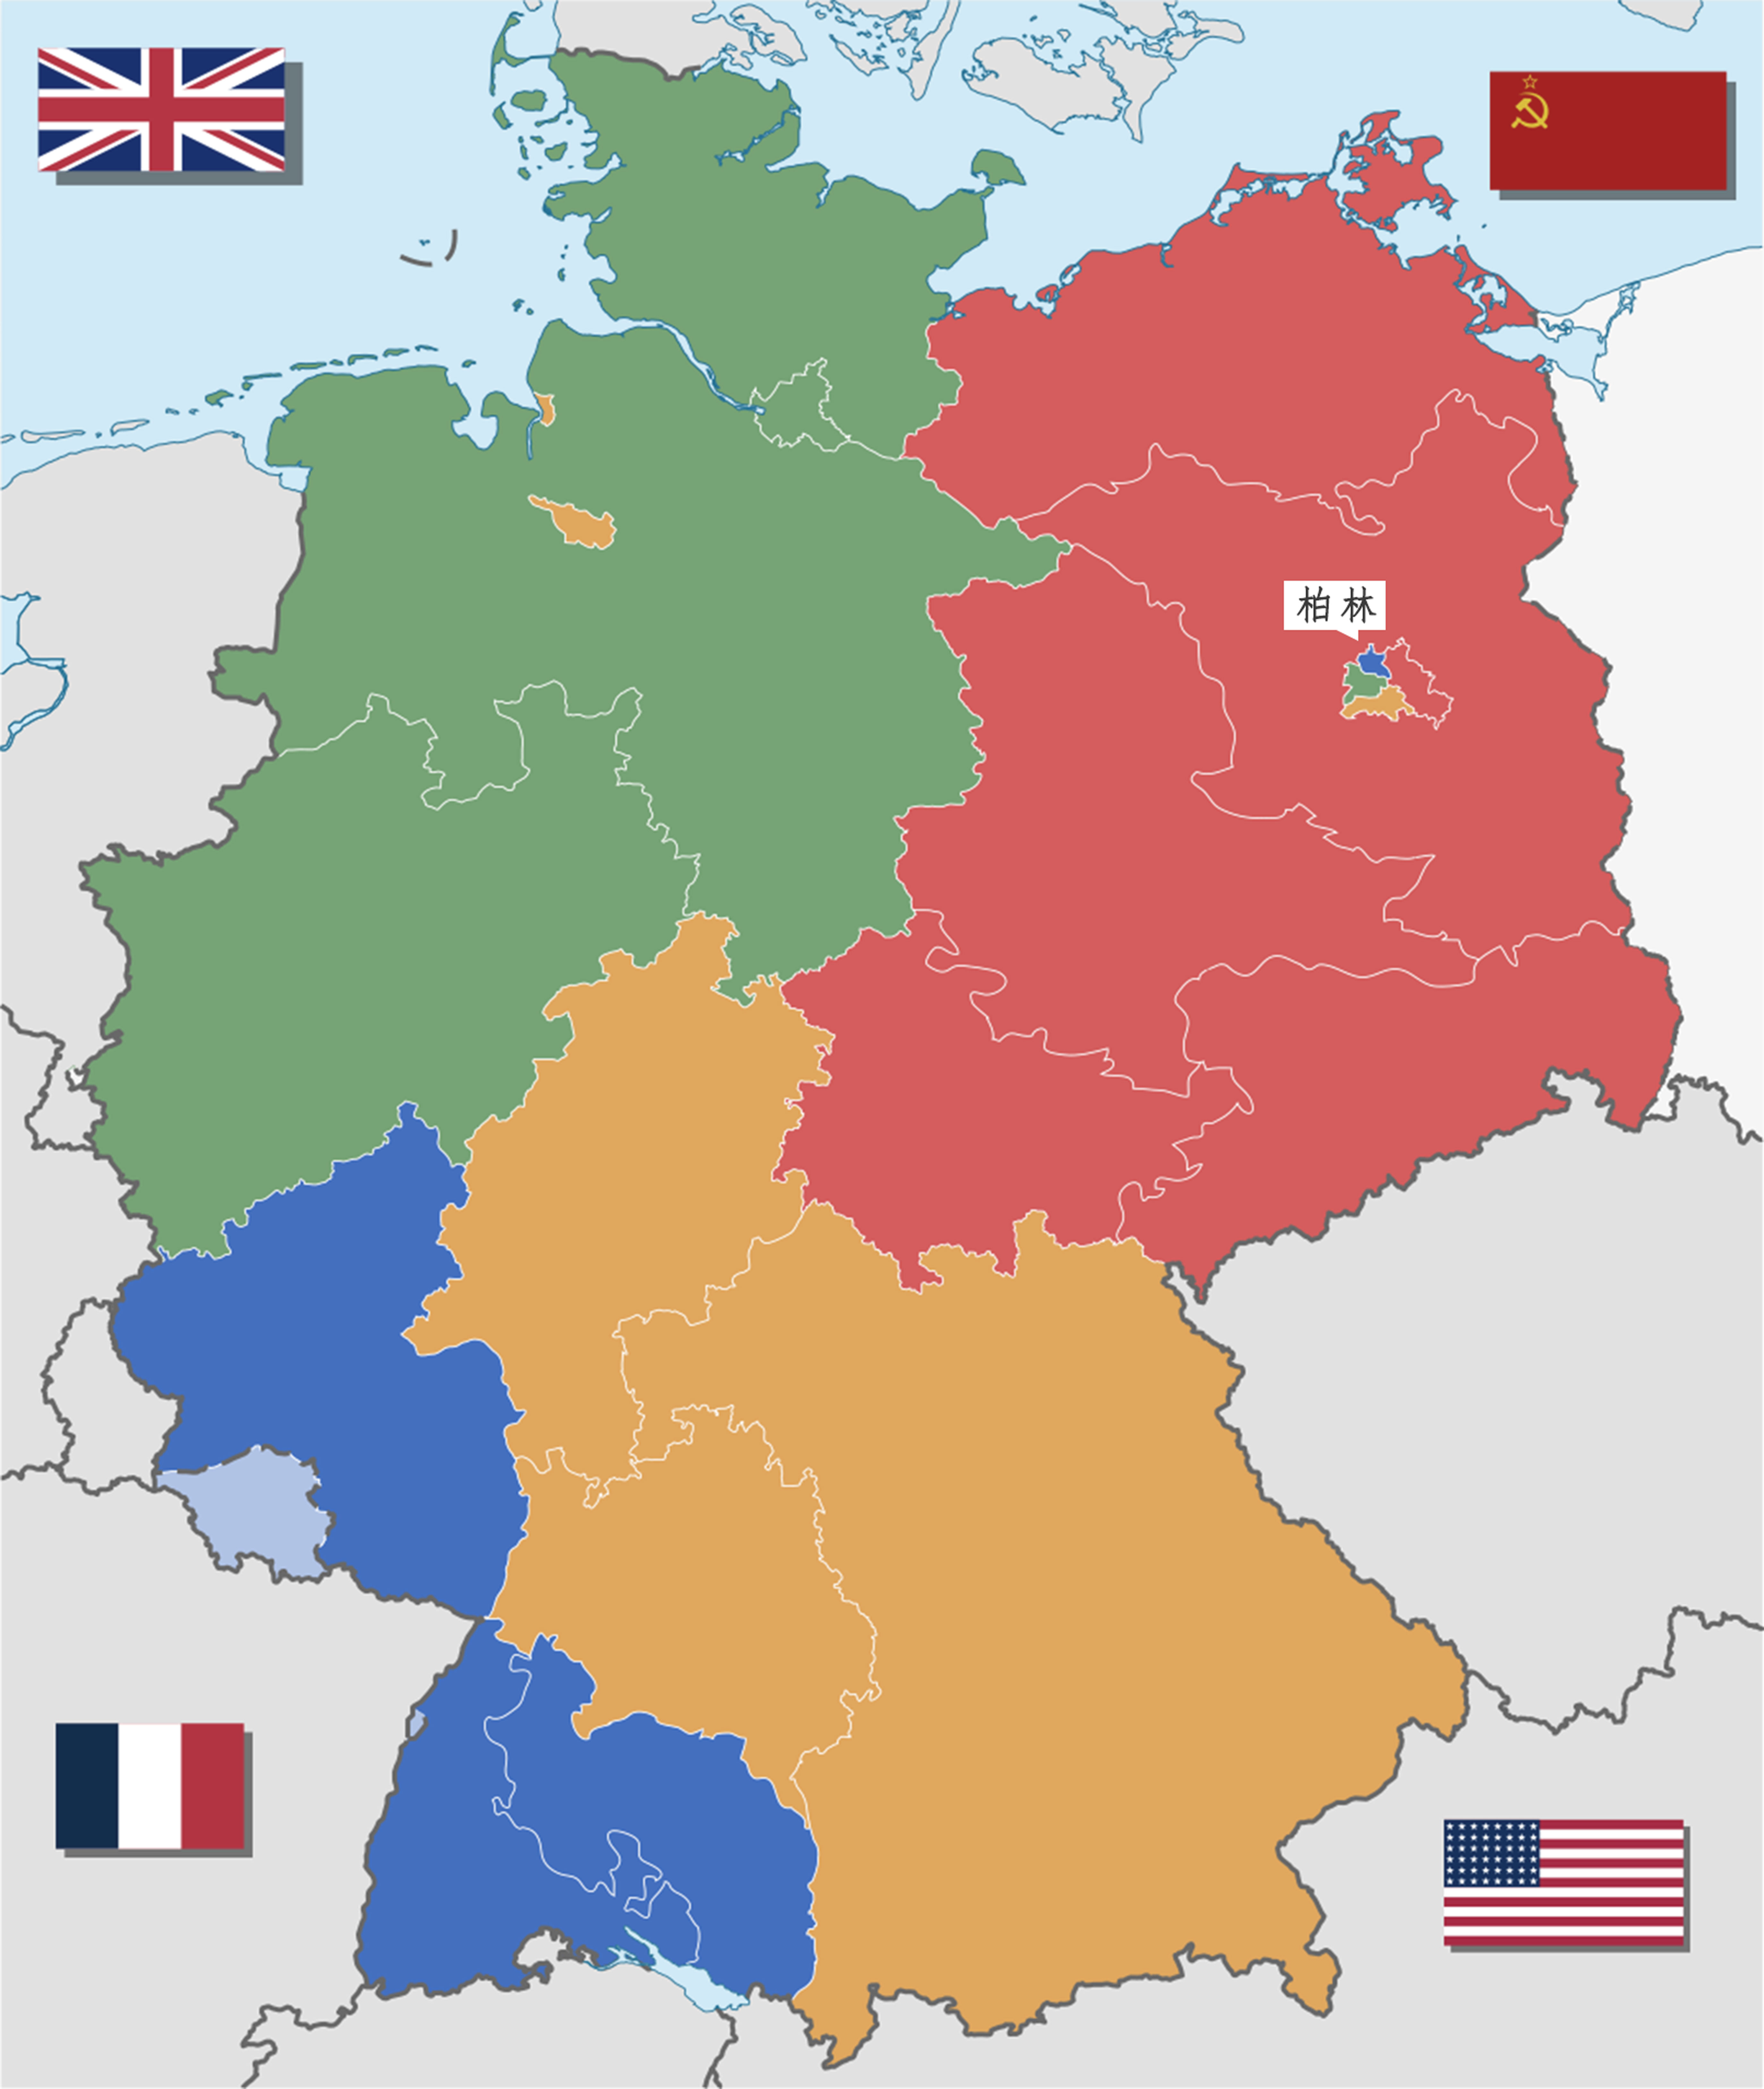 区域二战结束后,因无条件投降而彻底丧失主权的德国被盟军分区占领